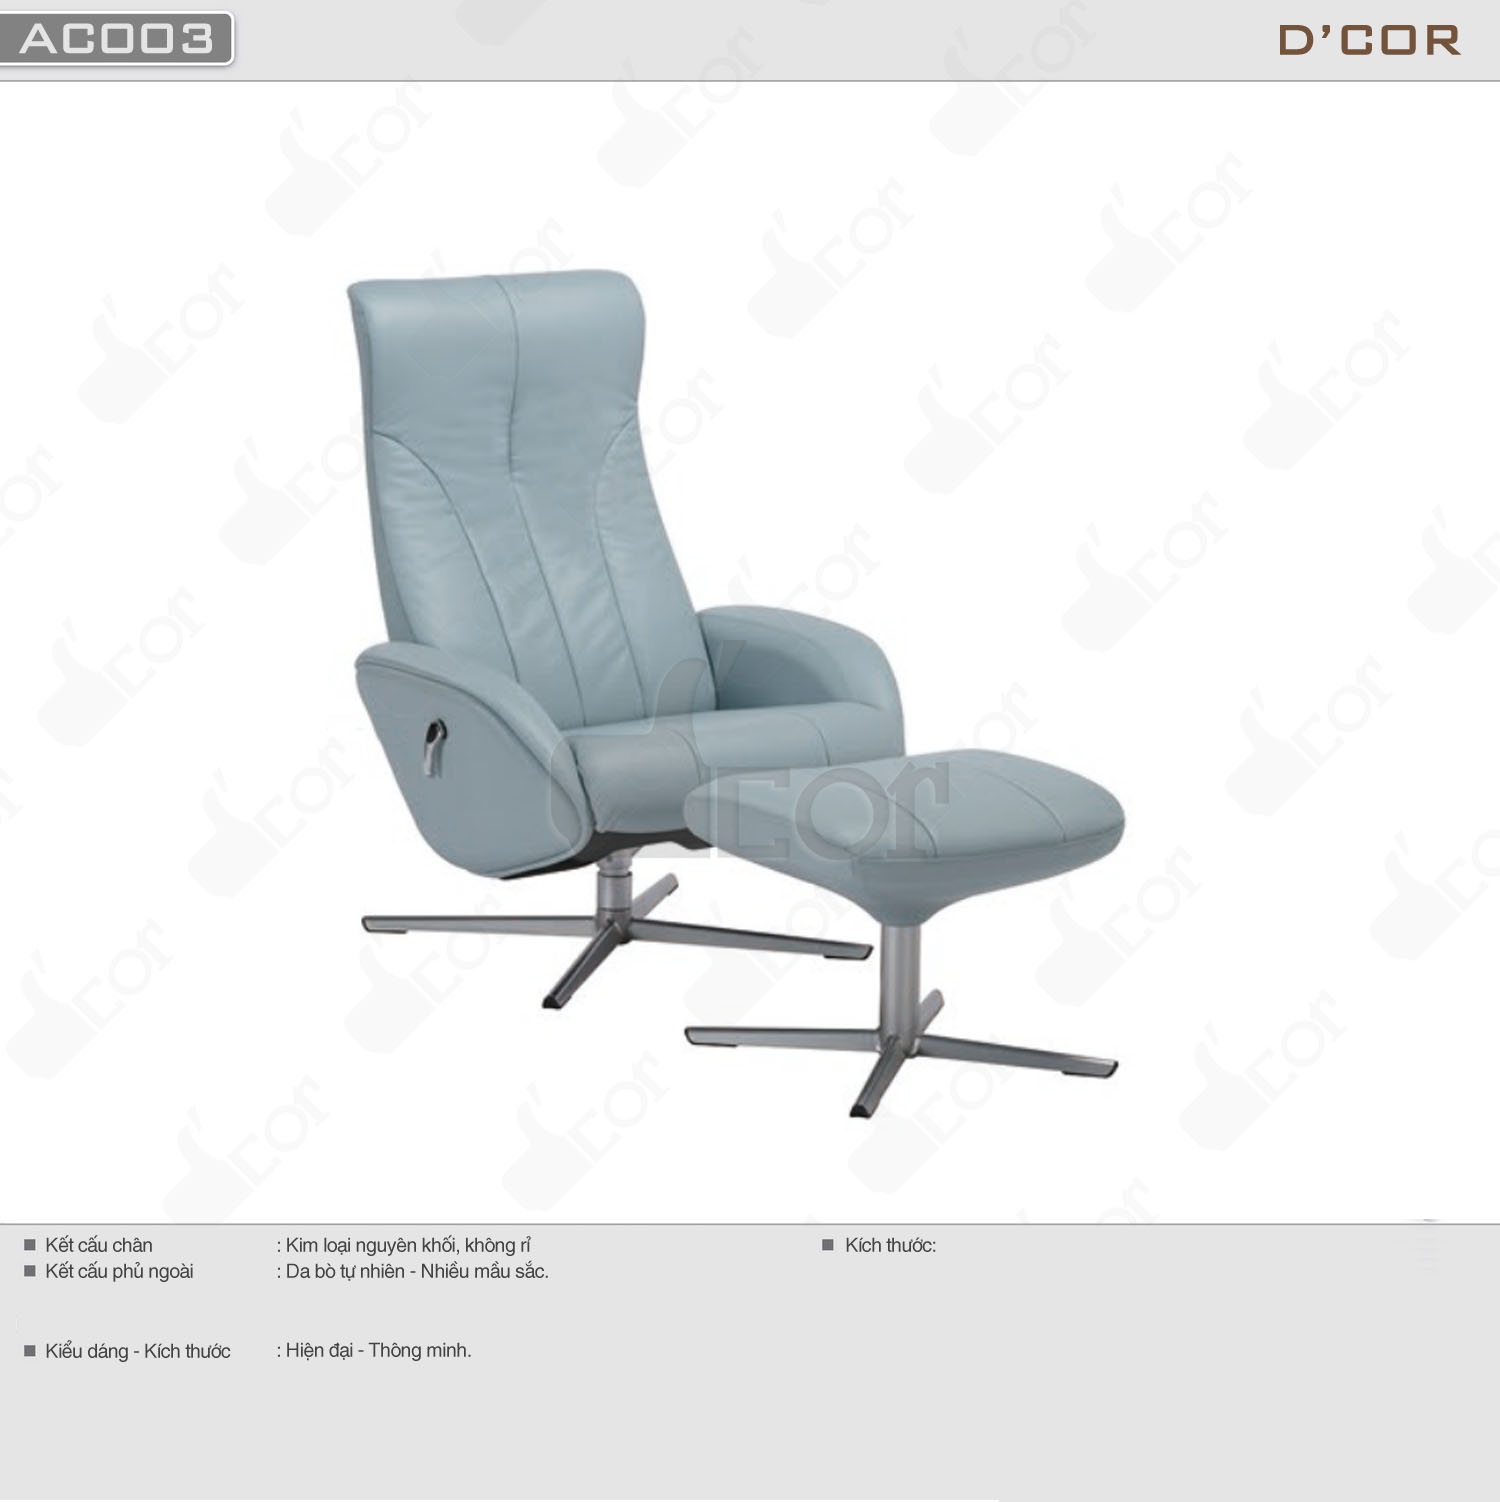 Ghế armchair thông minh giá rẻ cho nội thất nhà đẹp hiện đại: AC003 > Ghế armchair thông minh cho nội thất nhà đẹp hiện đại: AC003